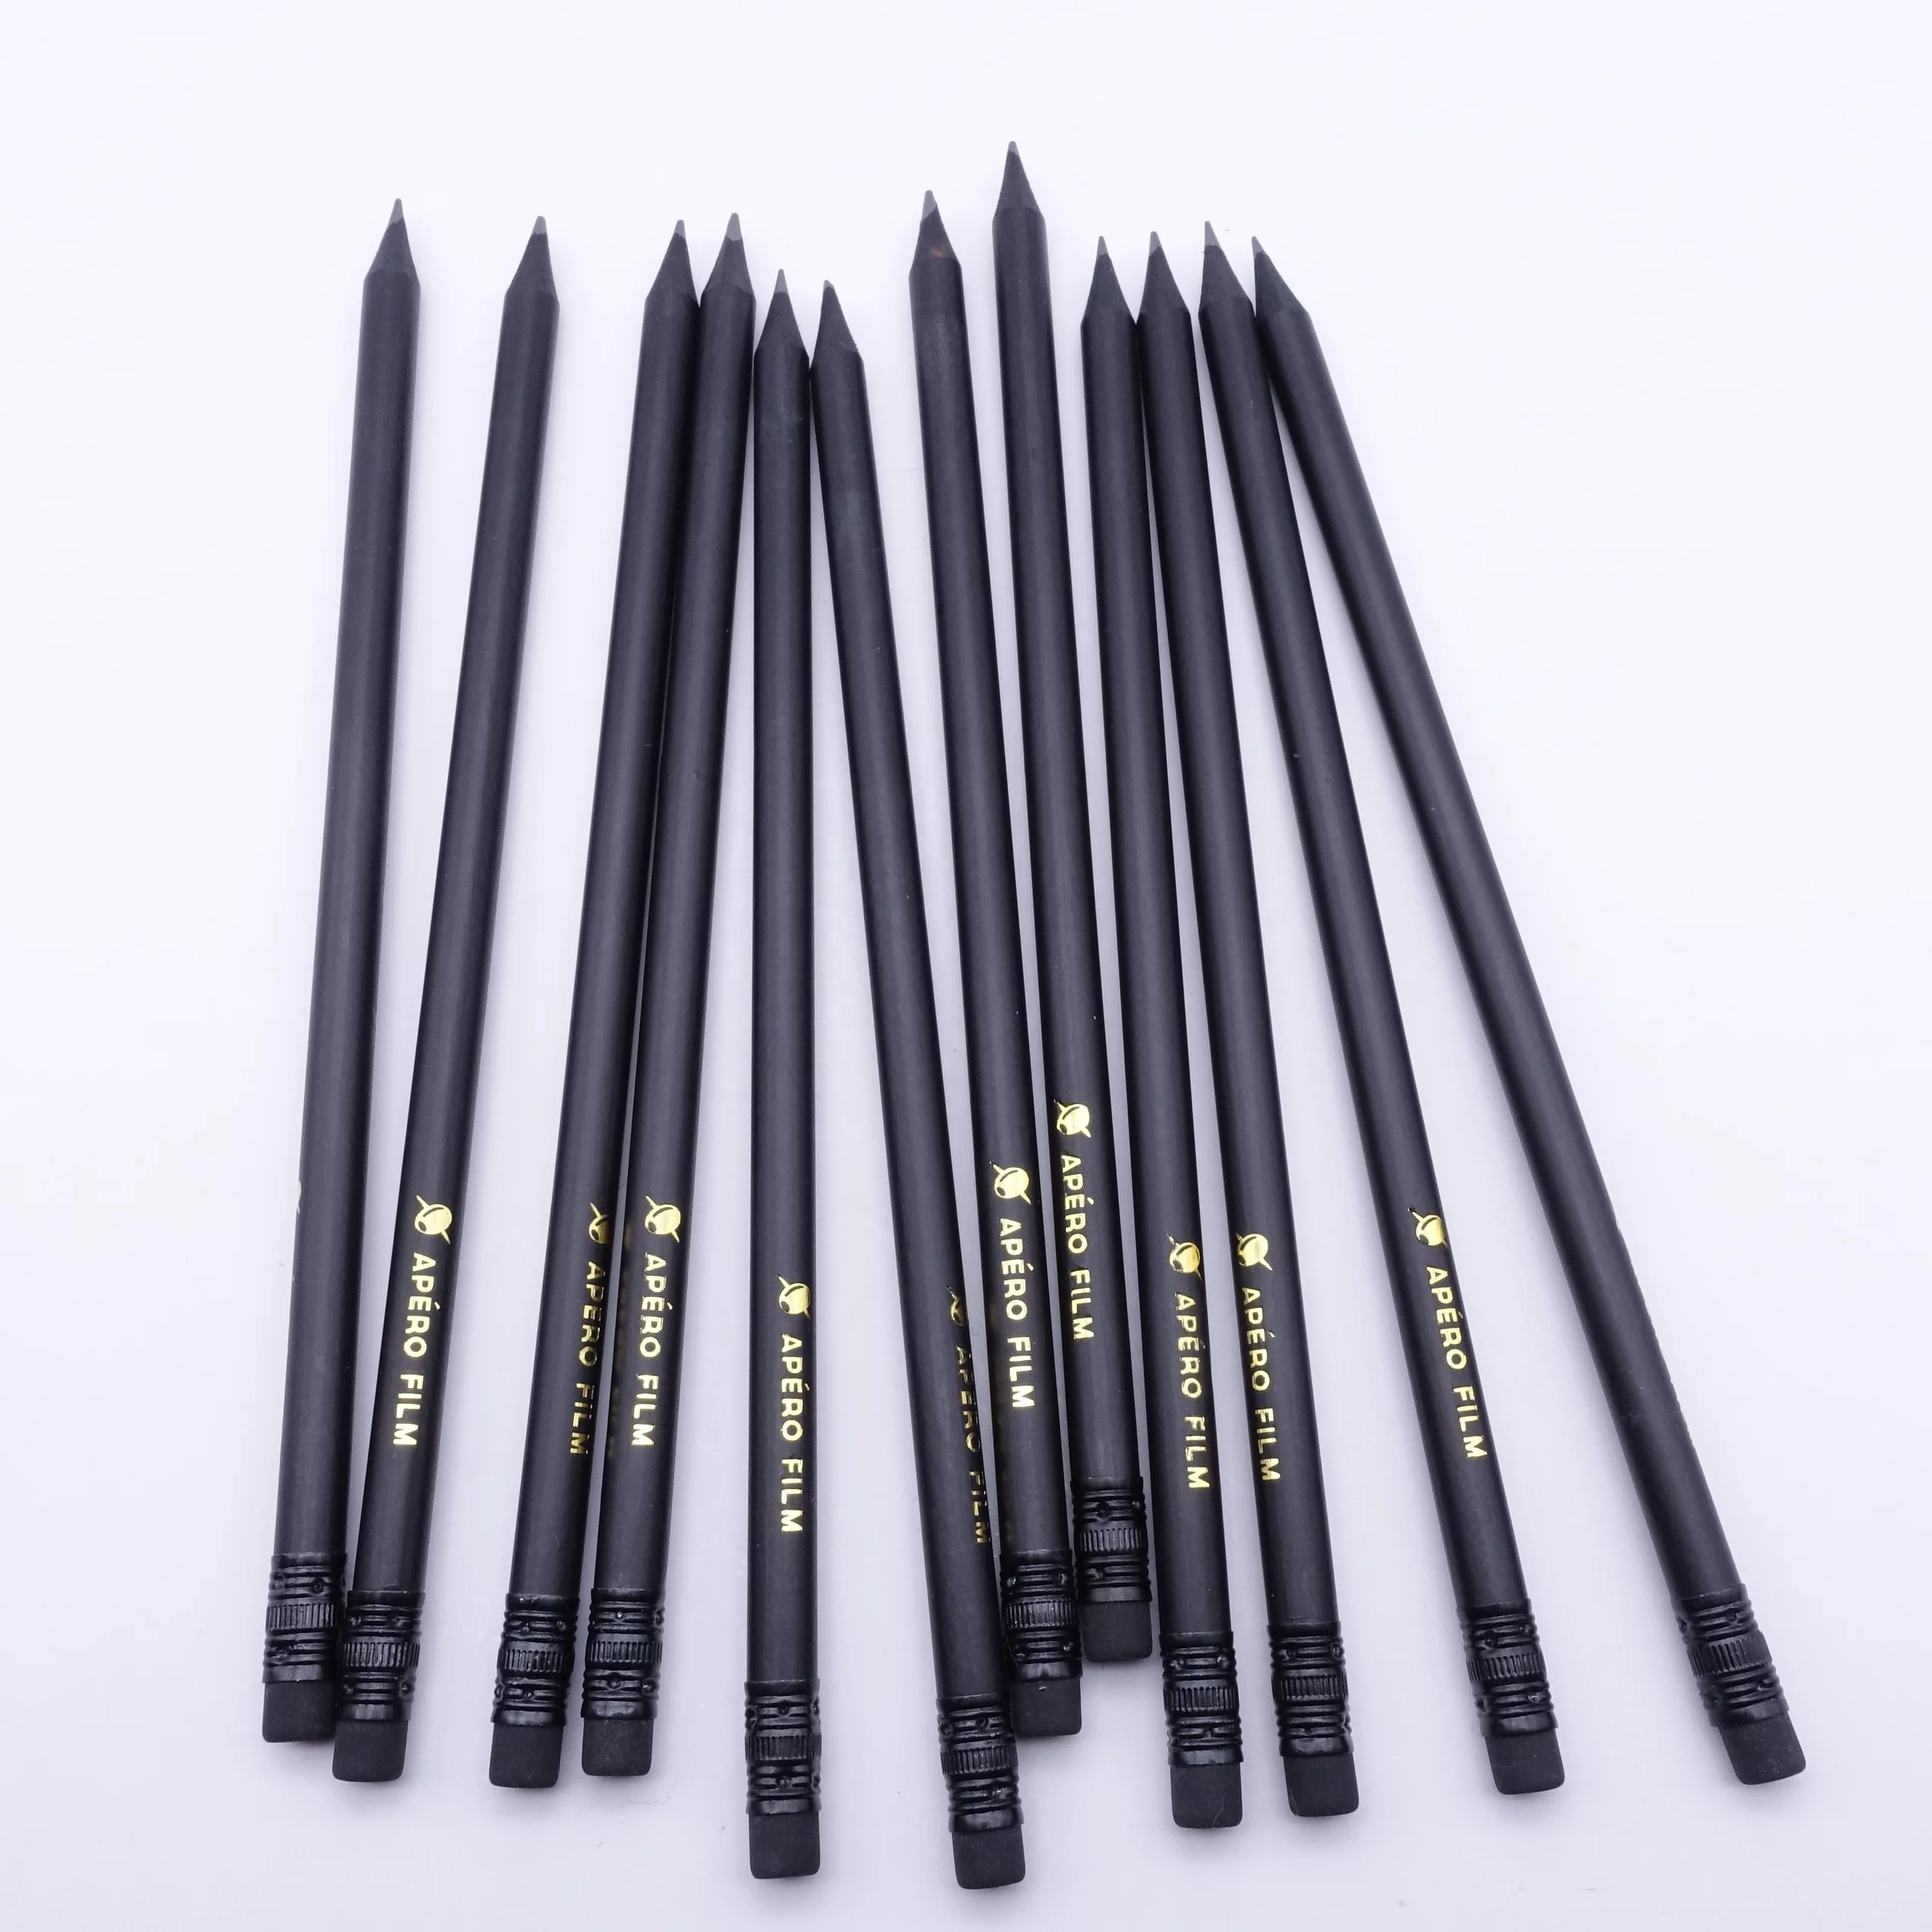 7"" sharpened black wood hb pencil with eraser